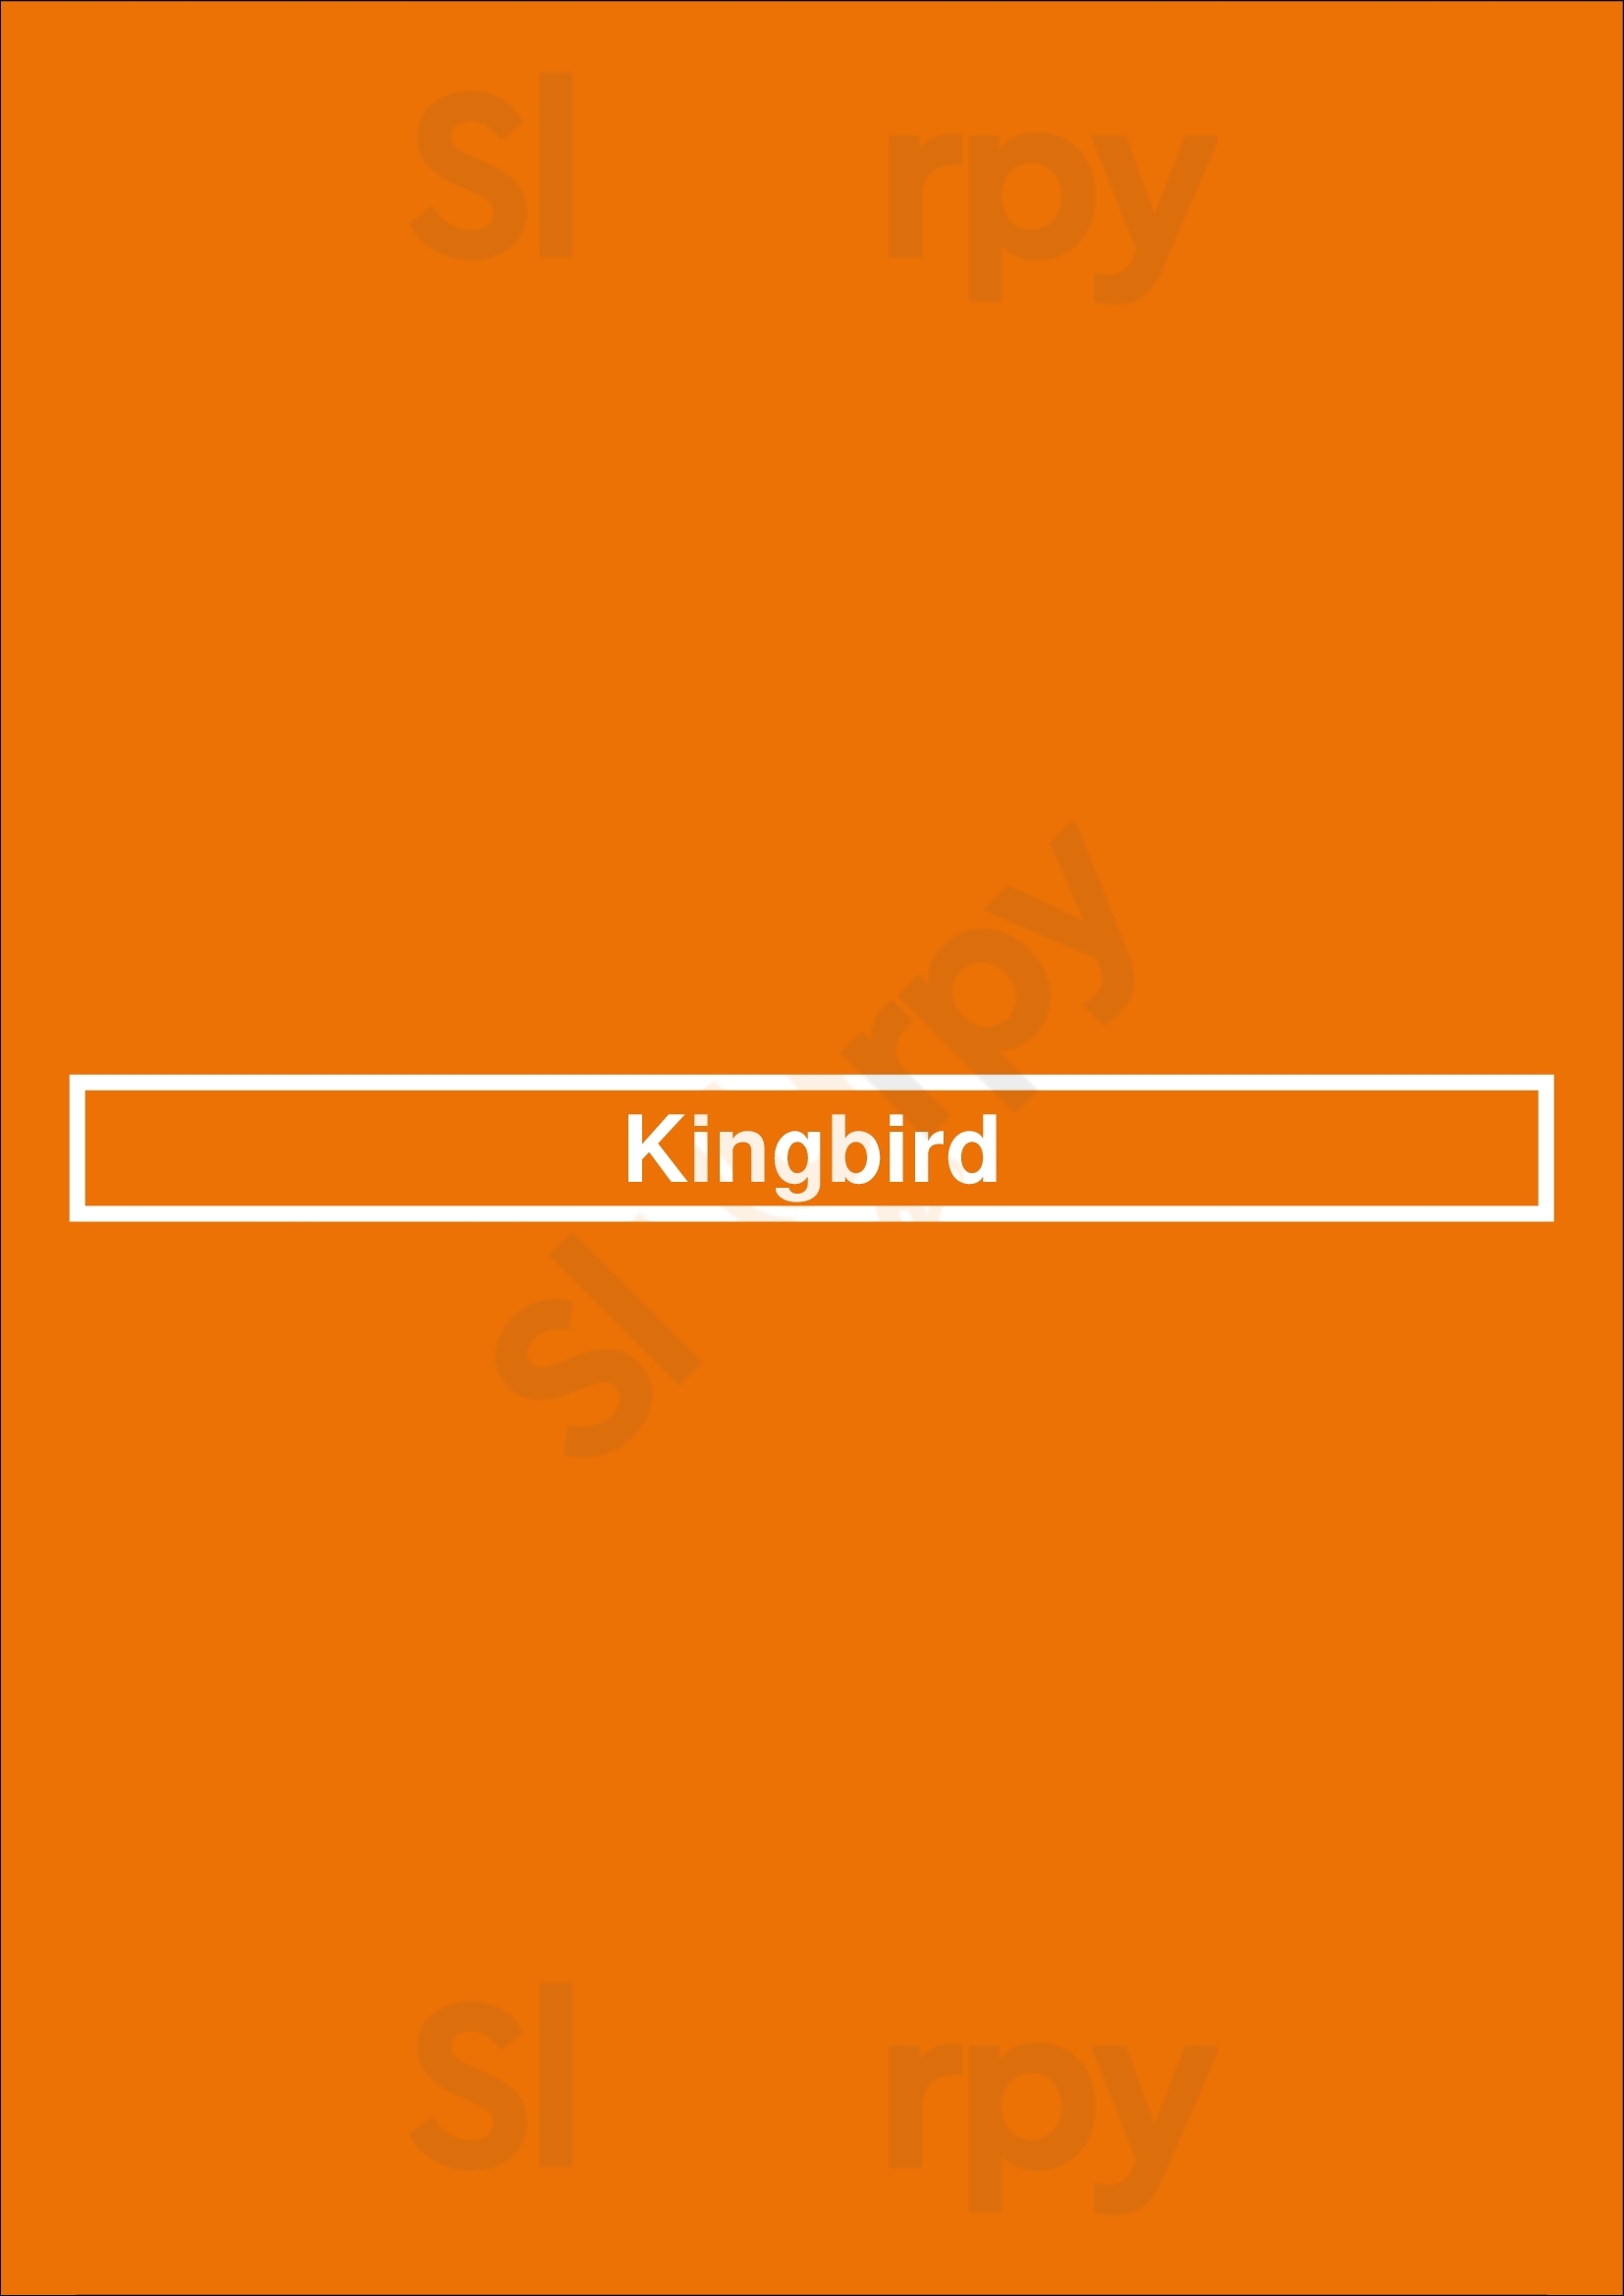 Kingbird Washington DC Menu - 1